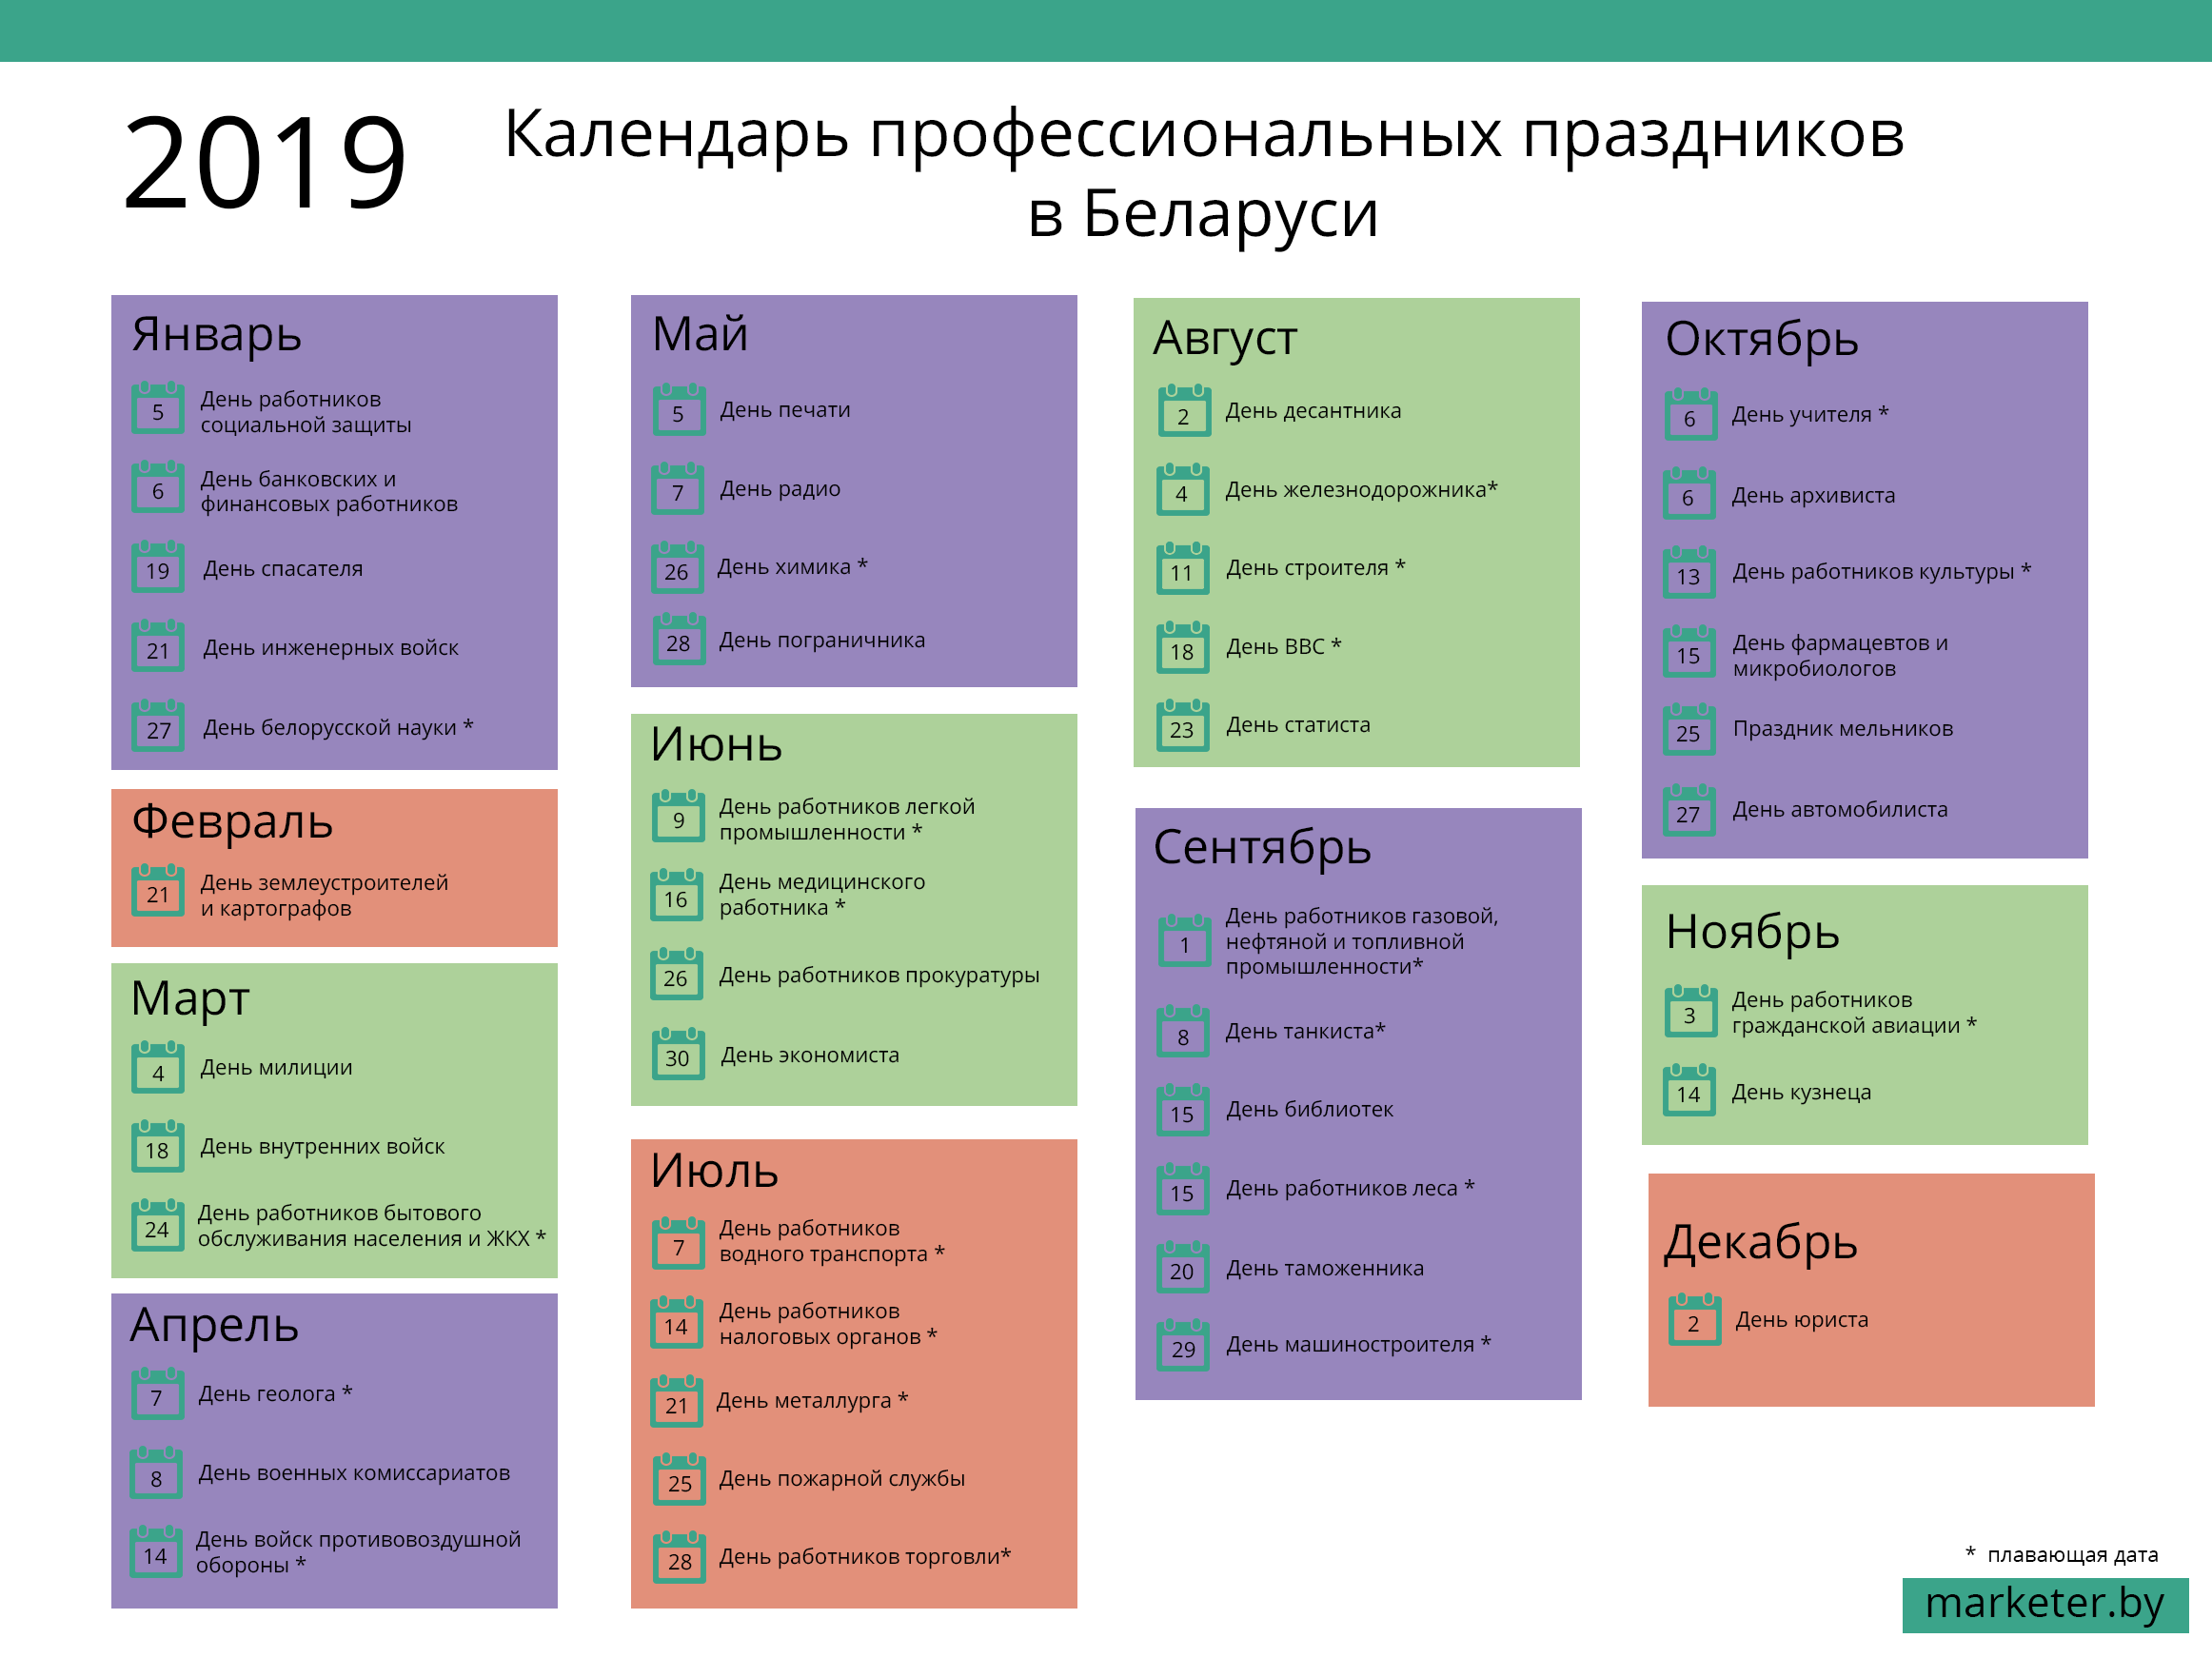 Профессиональные праздники Беларуси 2019 - О маркетинге и продвижении  бизнеса